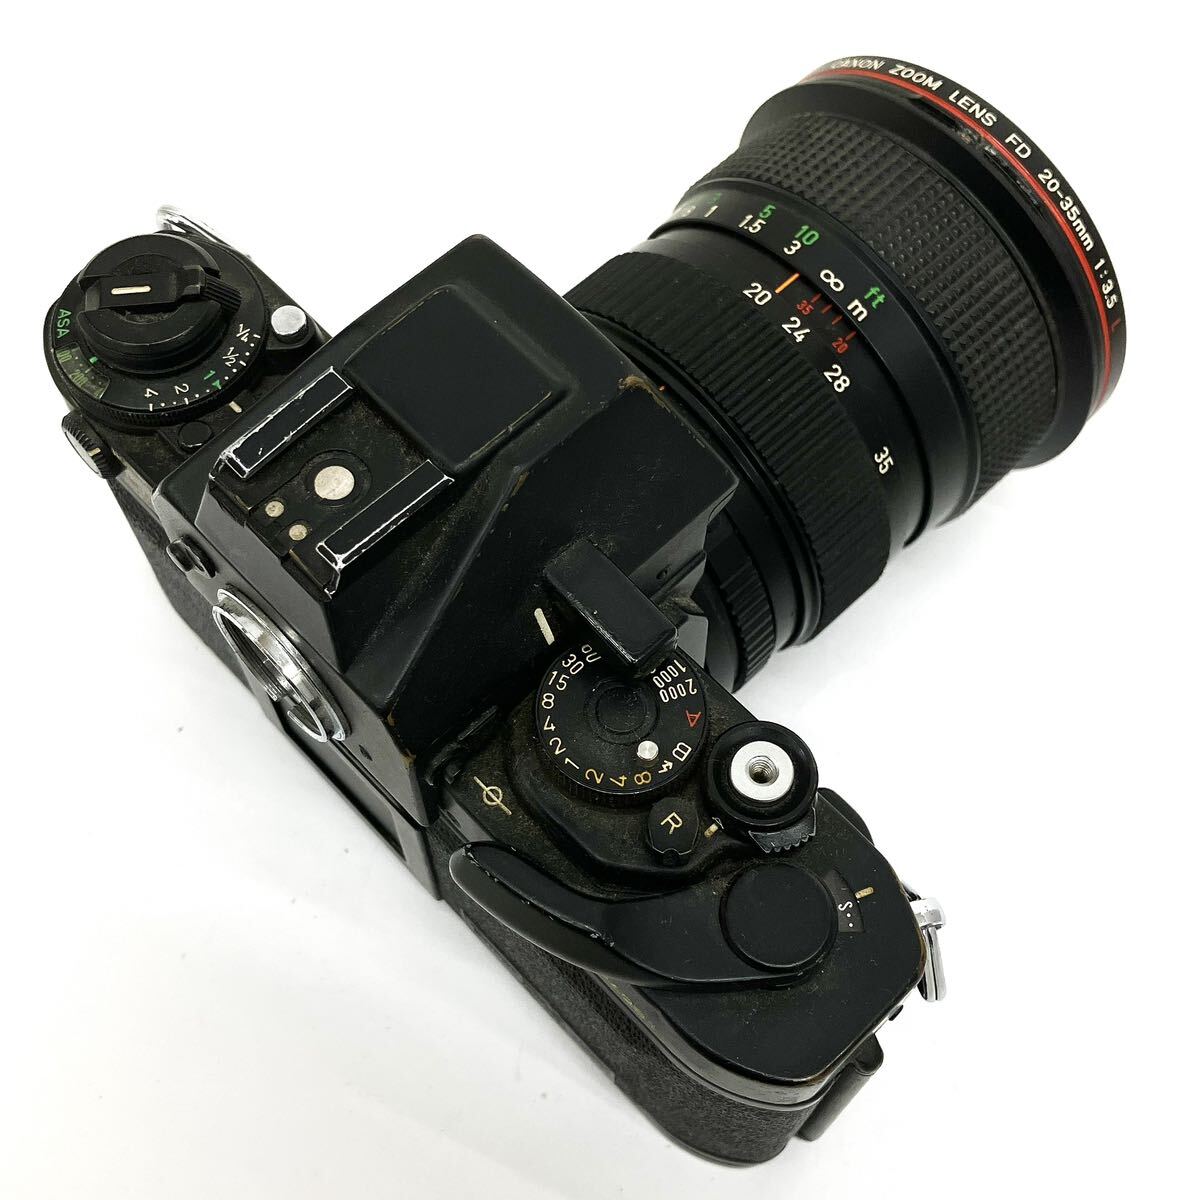 Canon キャノン F-1 ボディ ZOOM LENS FD 20-35mm 1:3.5mm L レンズ AE ワインダー FN セット 一眼レフカメラ alp川0415_画像5